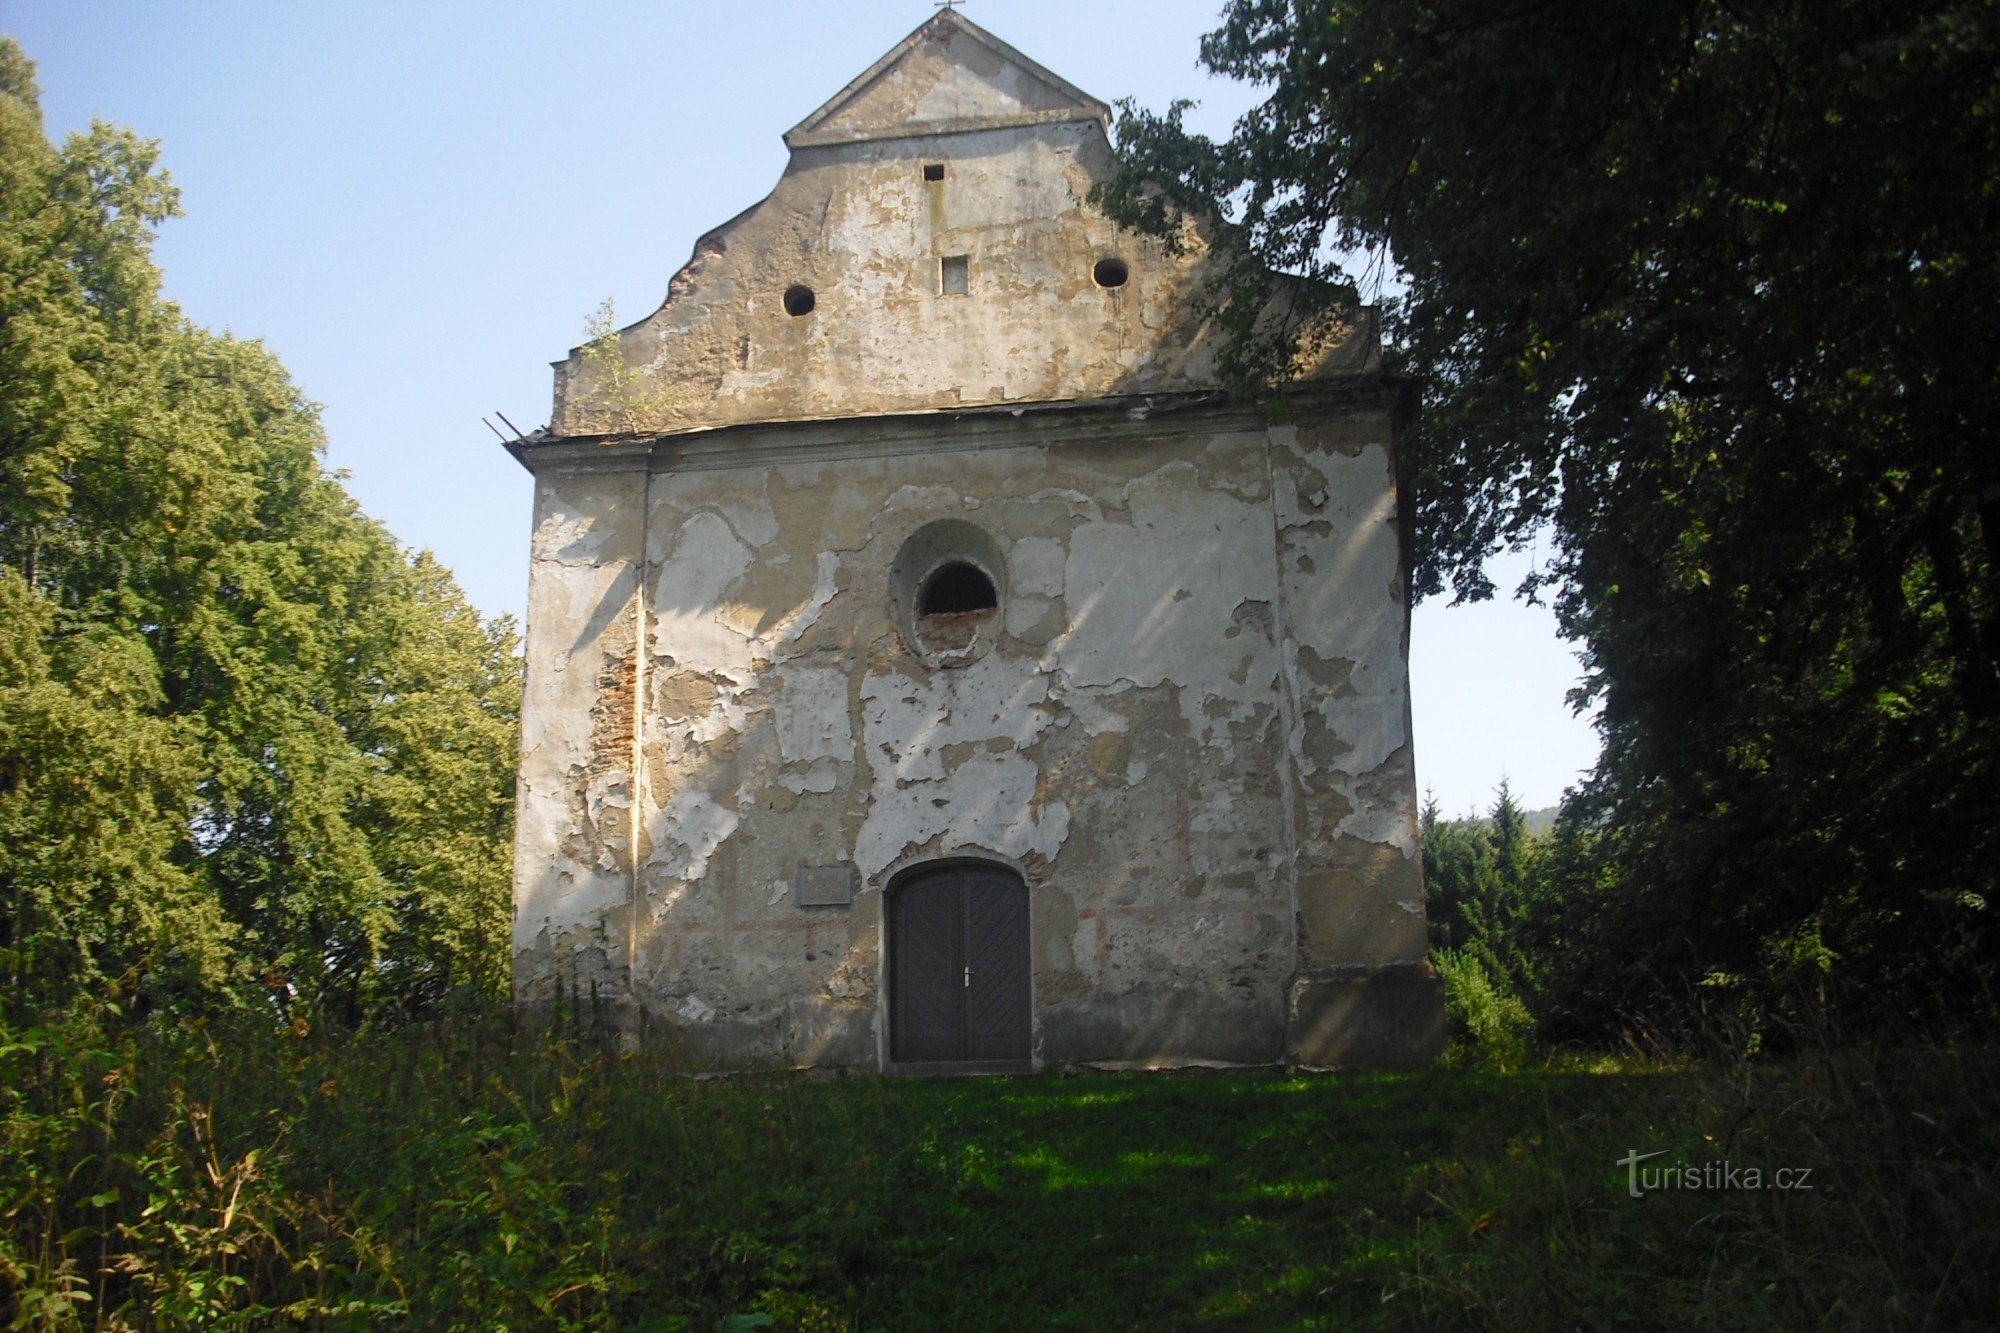 Chapelle de Saint-Rochus, que nous rencontrerons en chemin.